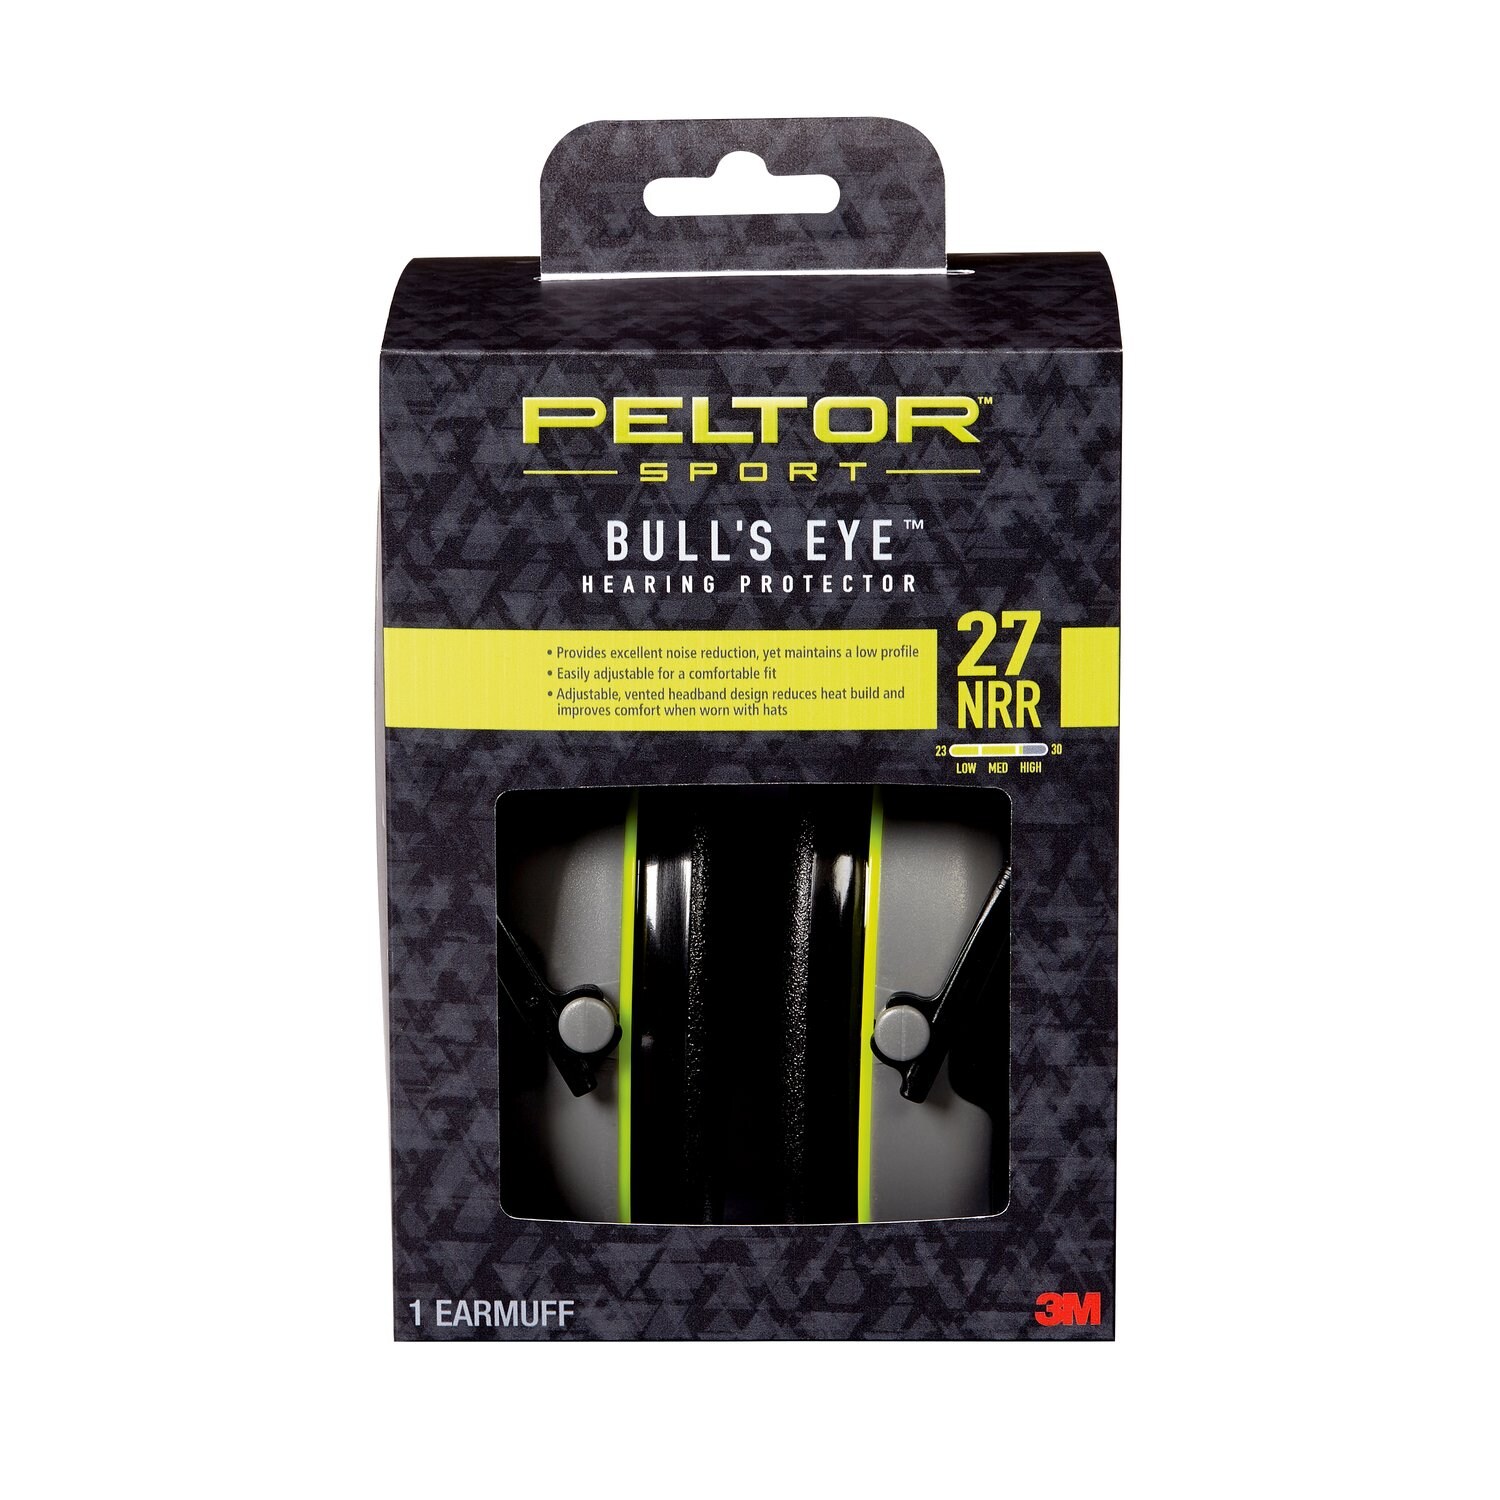 7100088577 - Peltor Sport Bull's Eye Hearing Protector, 97041-PEL-6C, 27 NRR
Black/Gray